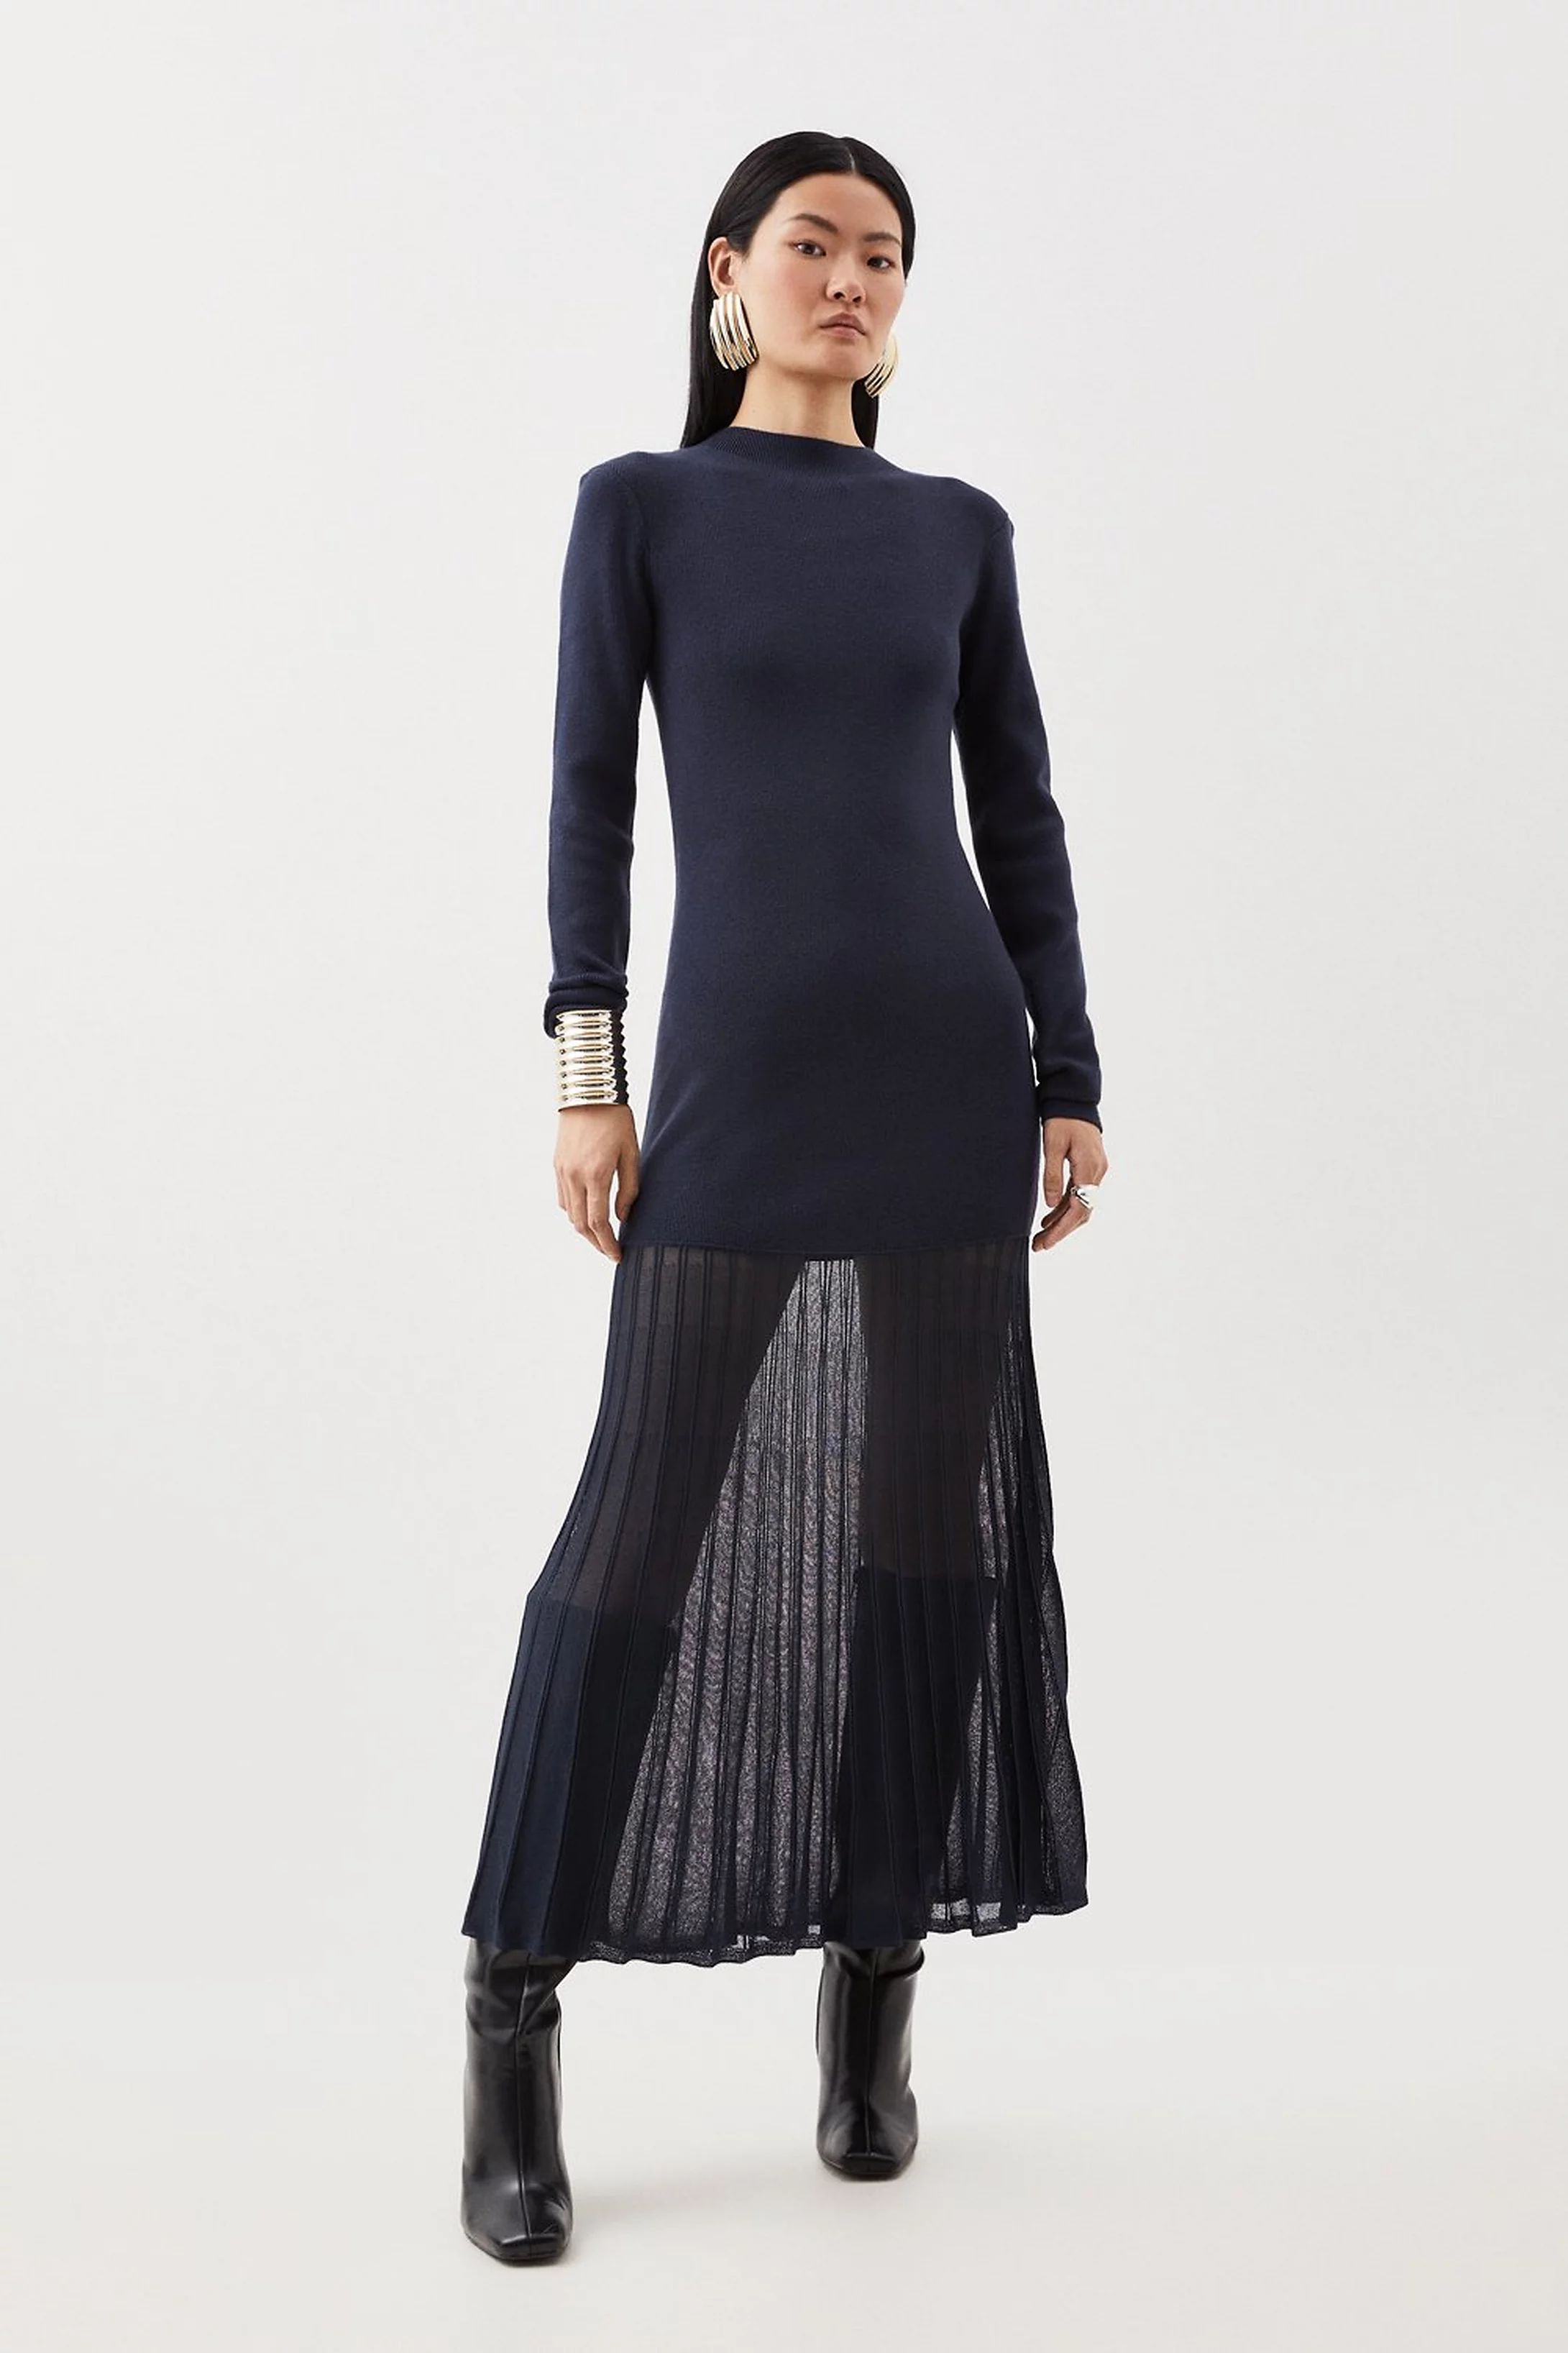 Semi Sheer Knit Midaxi Dress | Karen Millen UK + IE + DE + NL